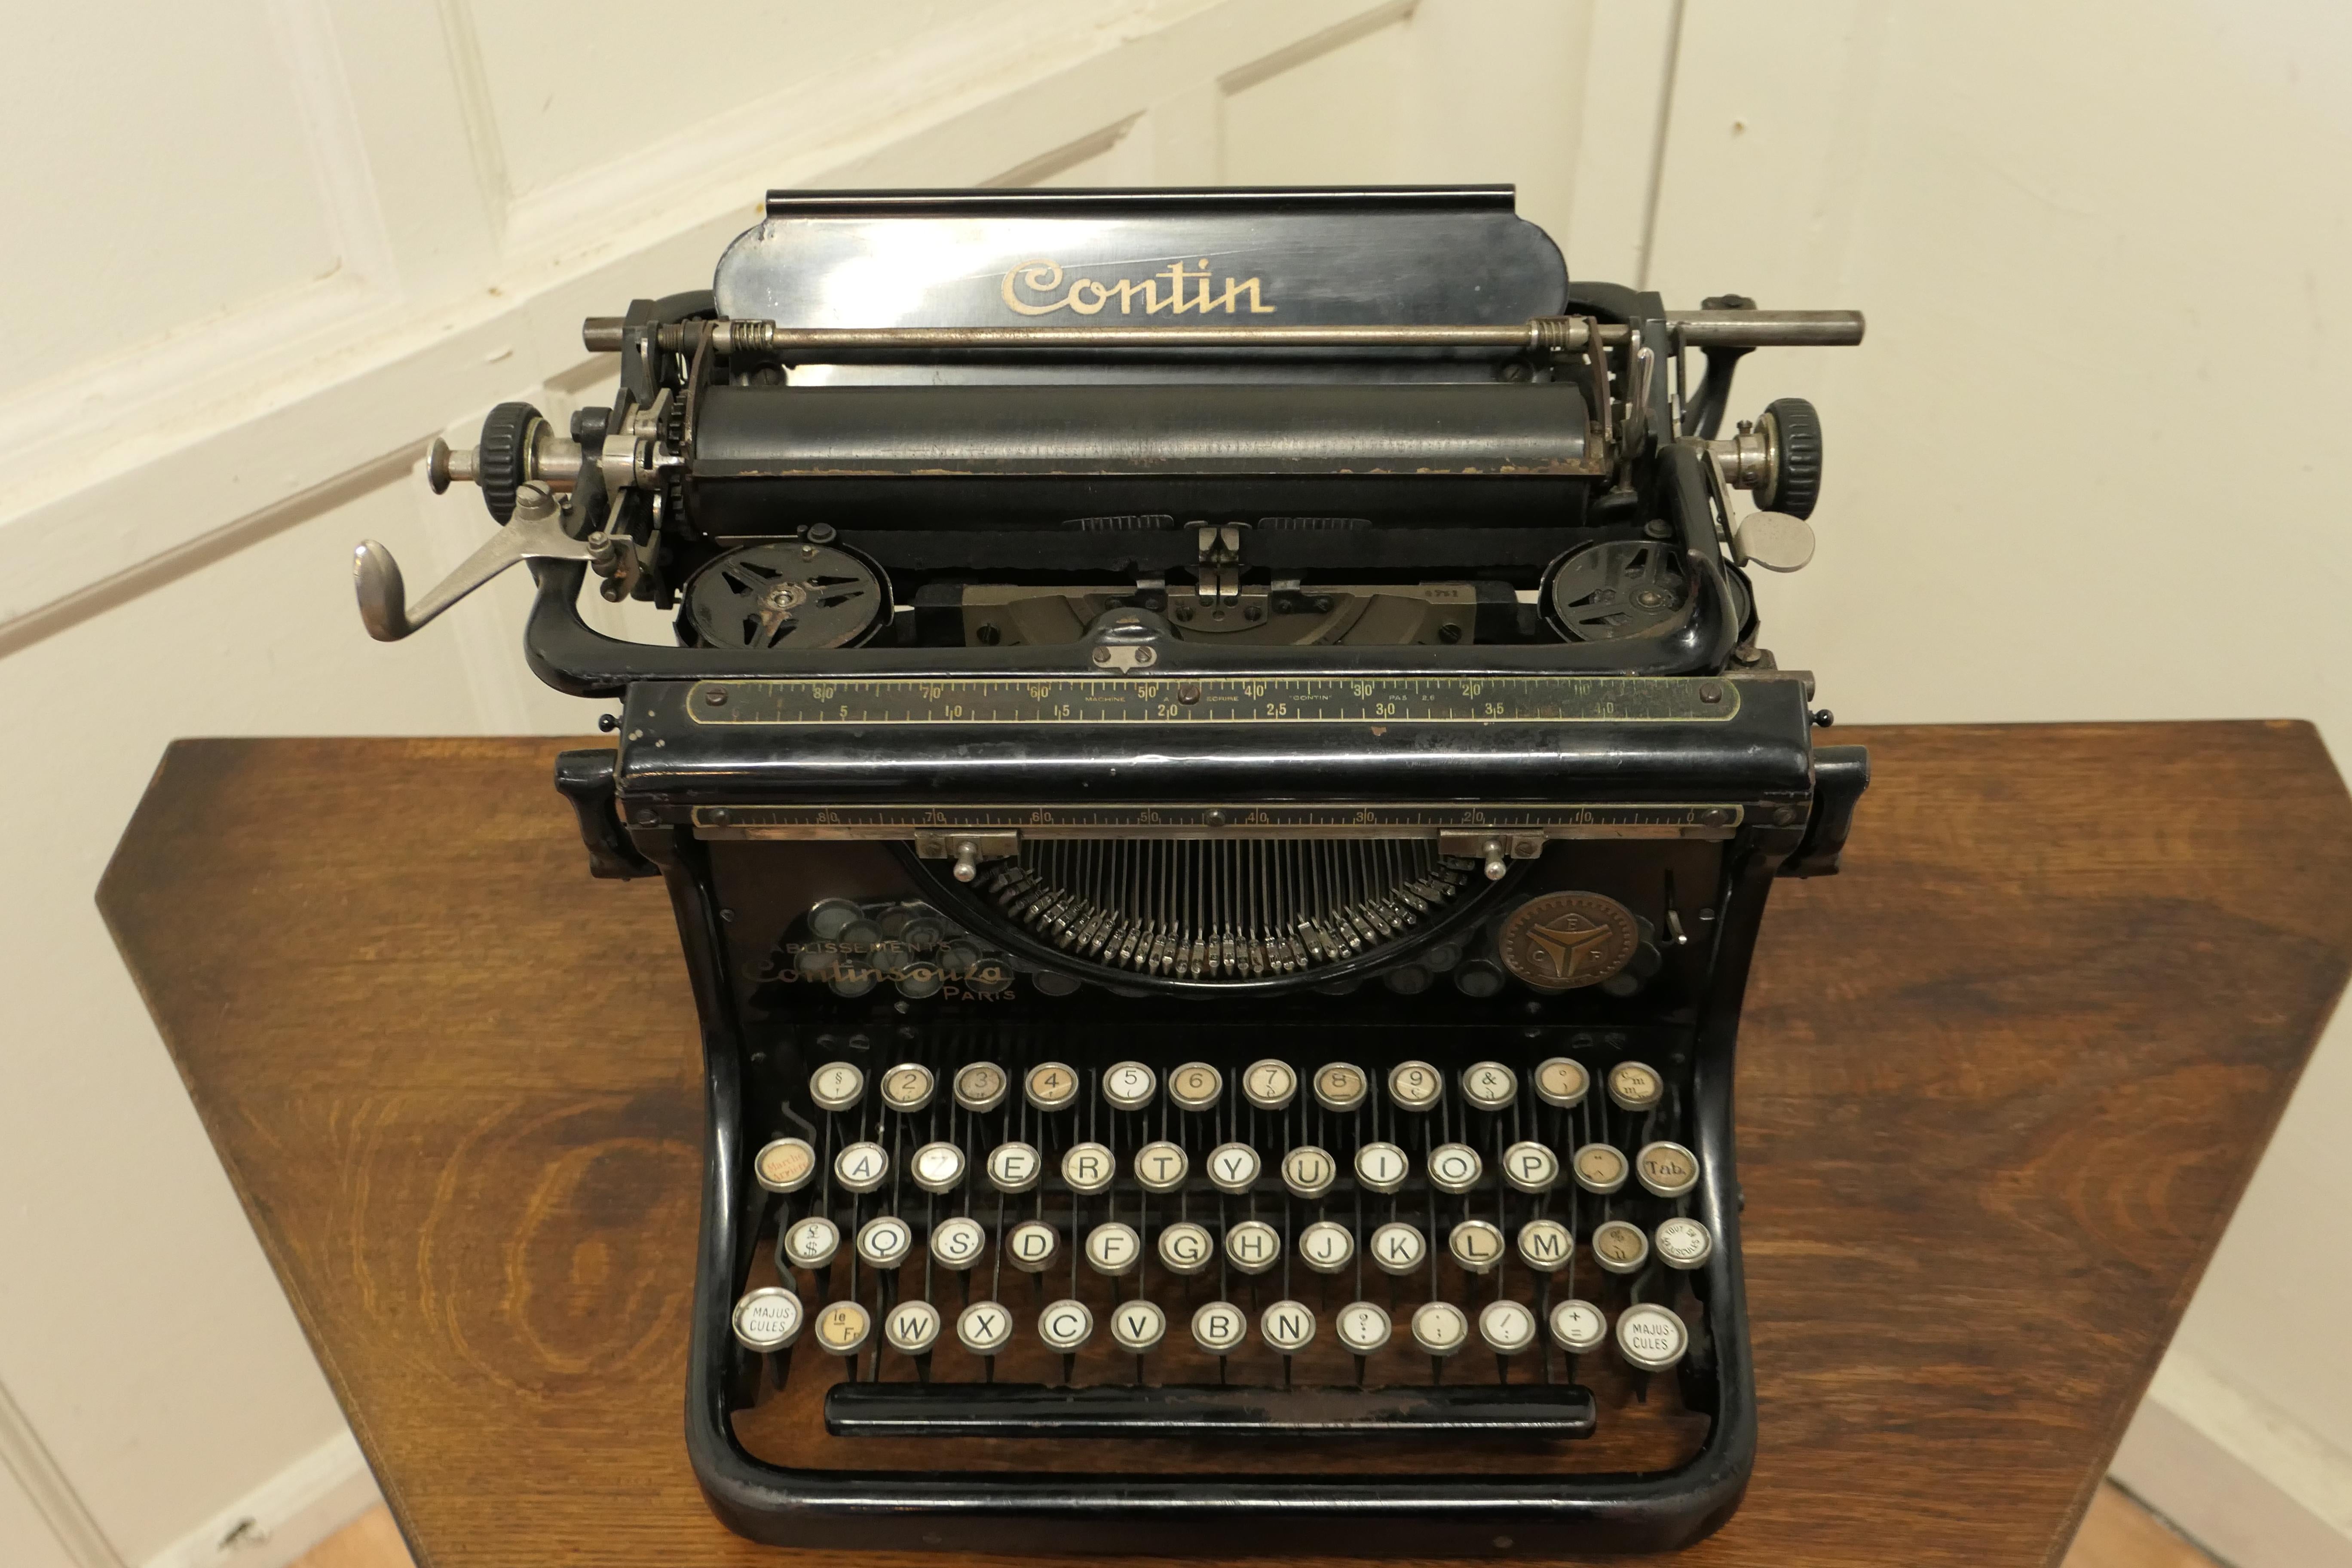 1940 typewriter